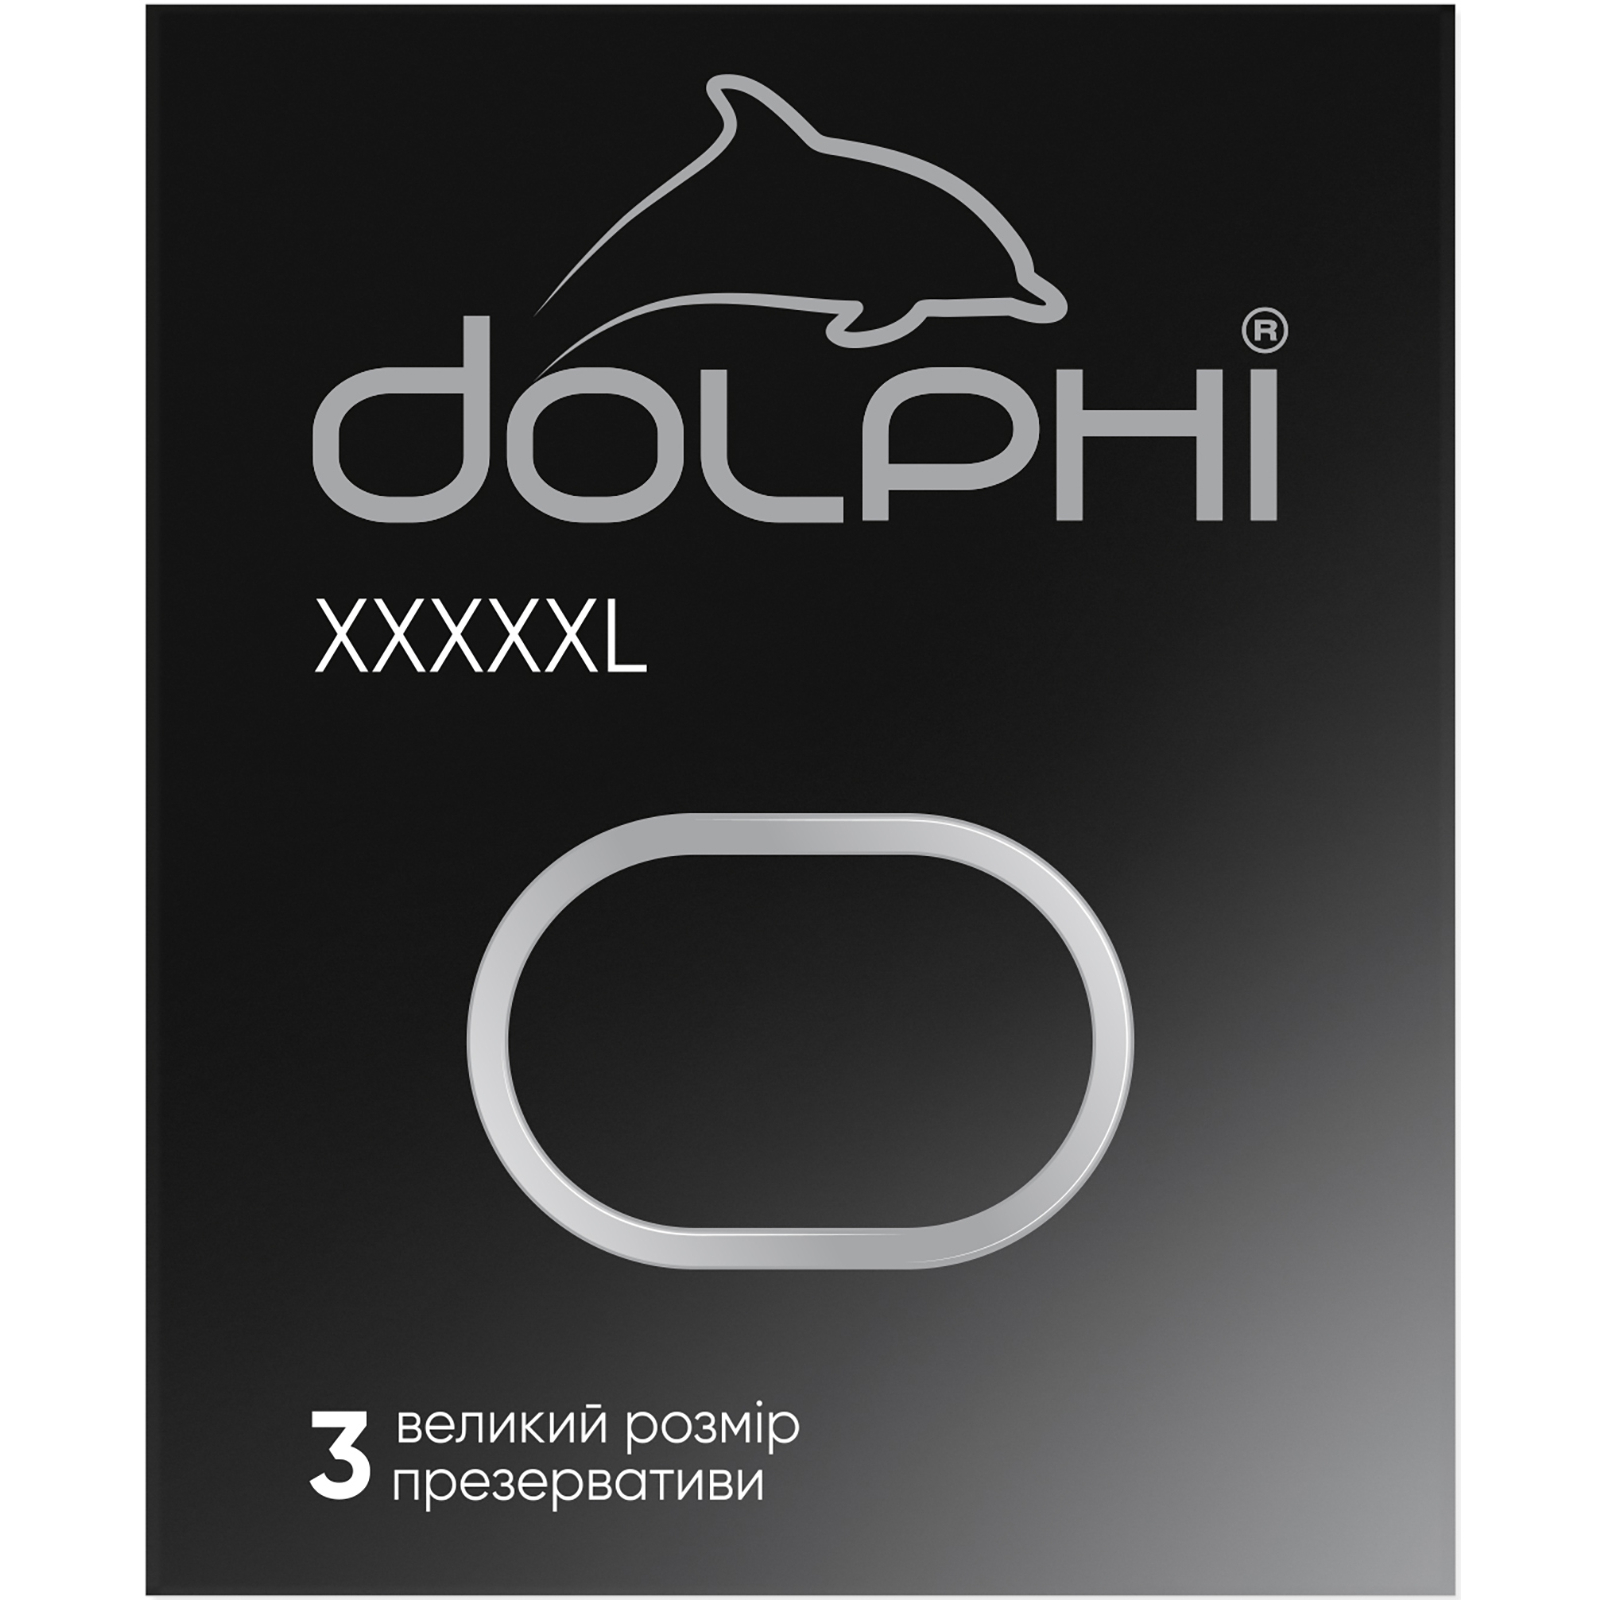 Презервативы Dolphi XXXXXL 12 шт. (4820144771095)